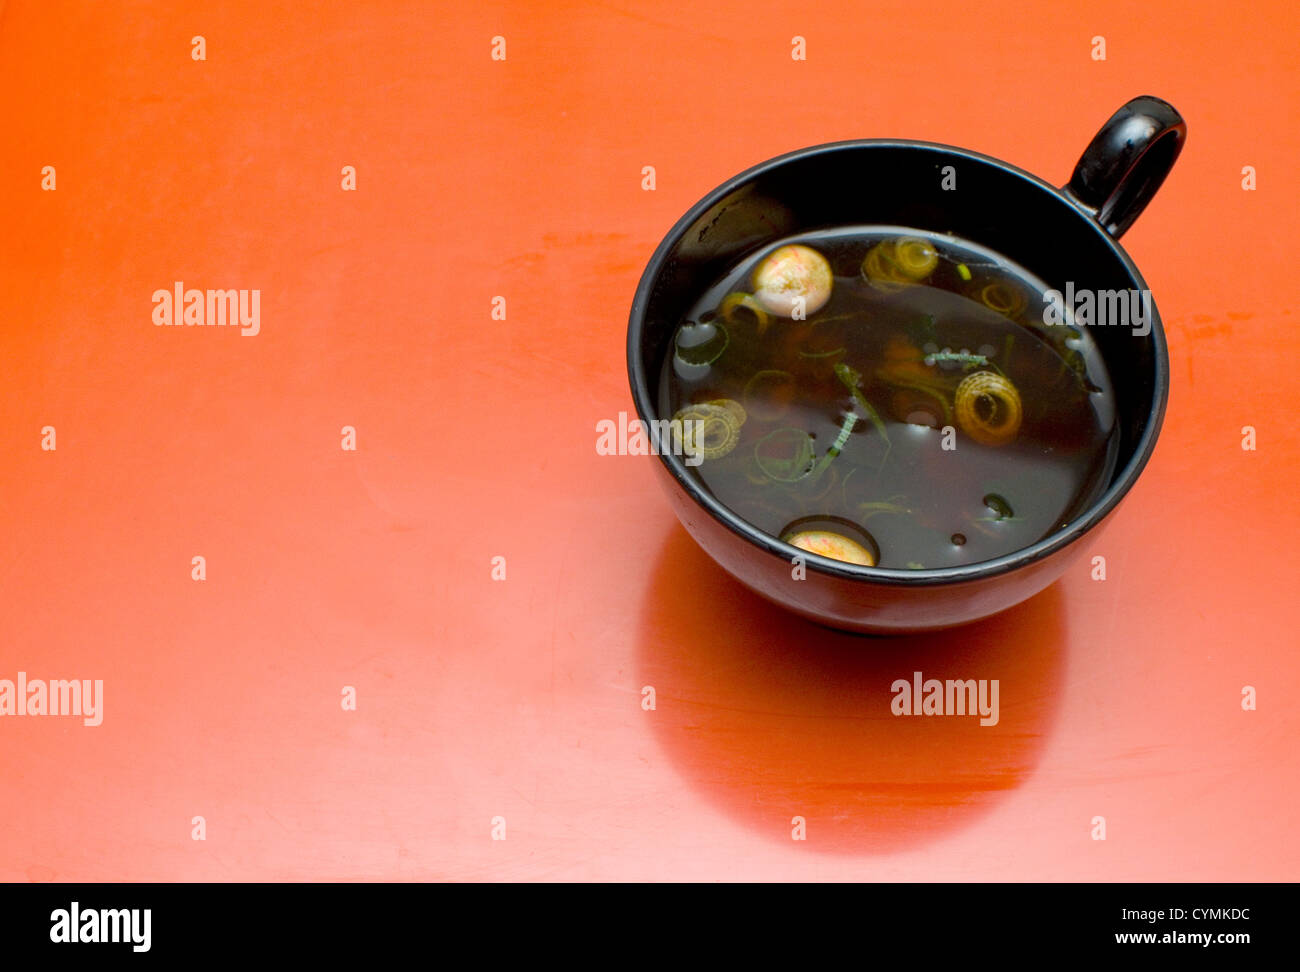 La soupe miso dans un bol de laque noire sur un fond rouge / orange. Banque D'Images